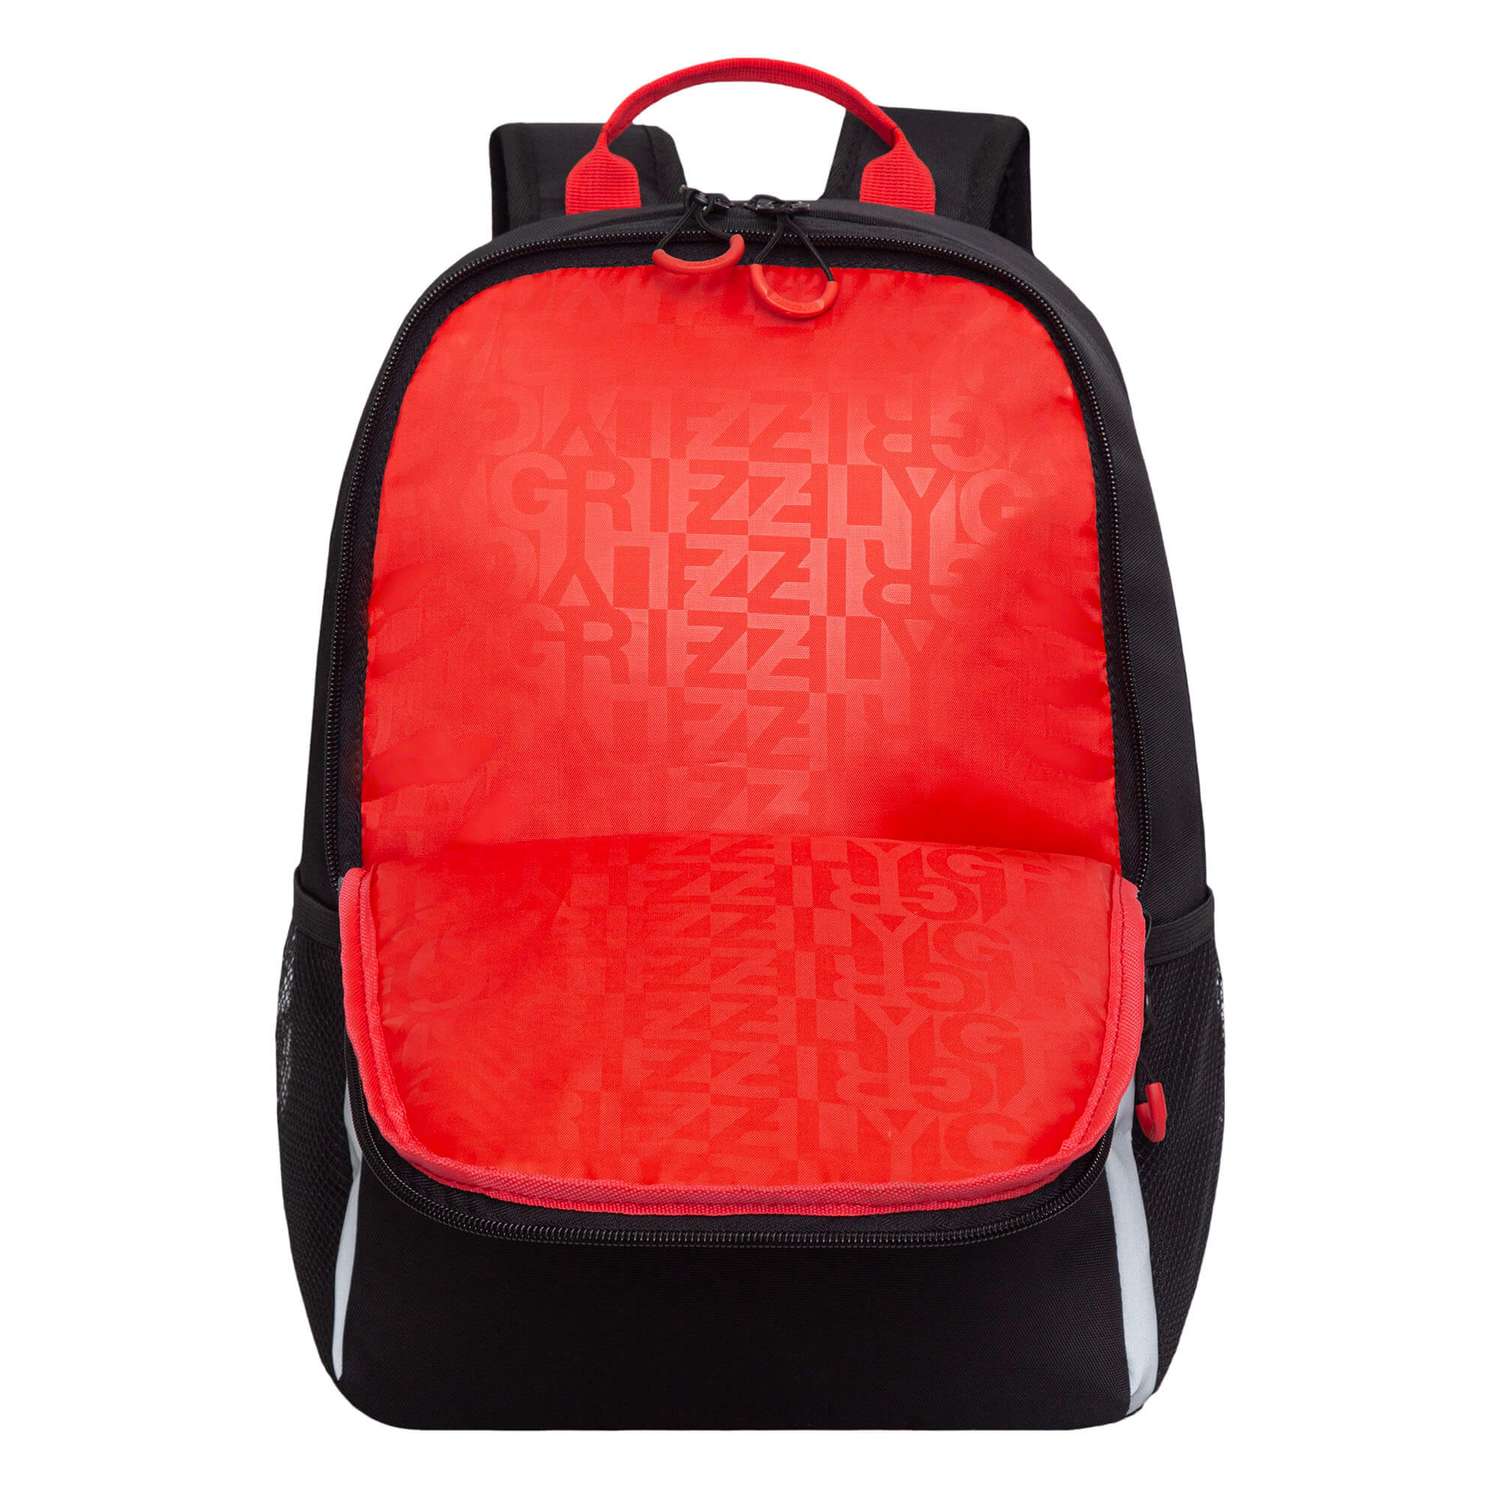 Рюкзак школьный Grizzly Черный-Красный RB-351-7/1 - фото 4